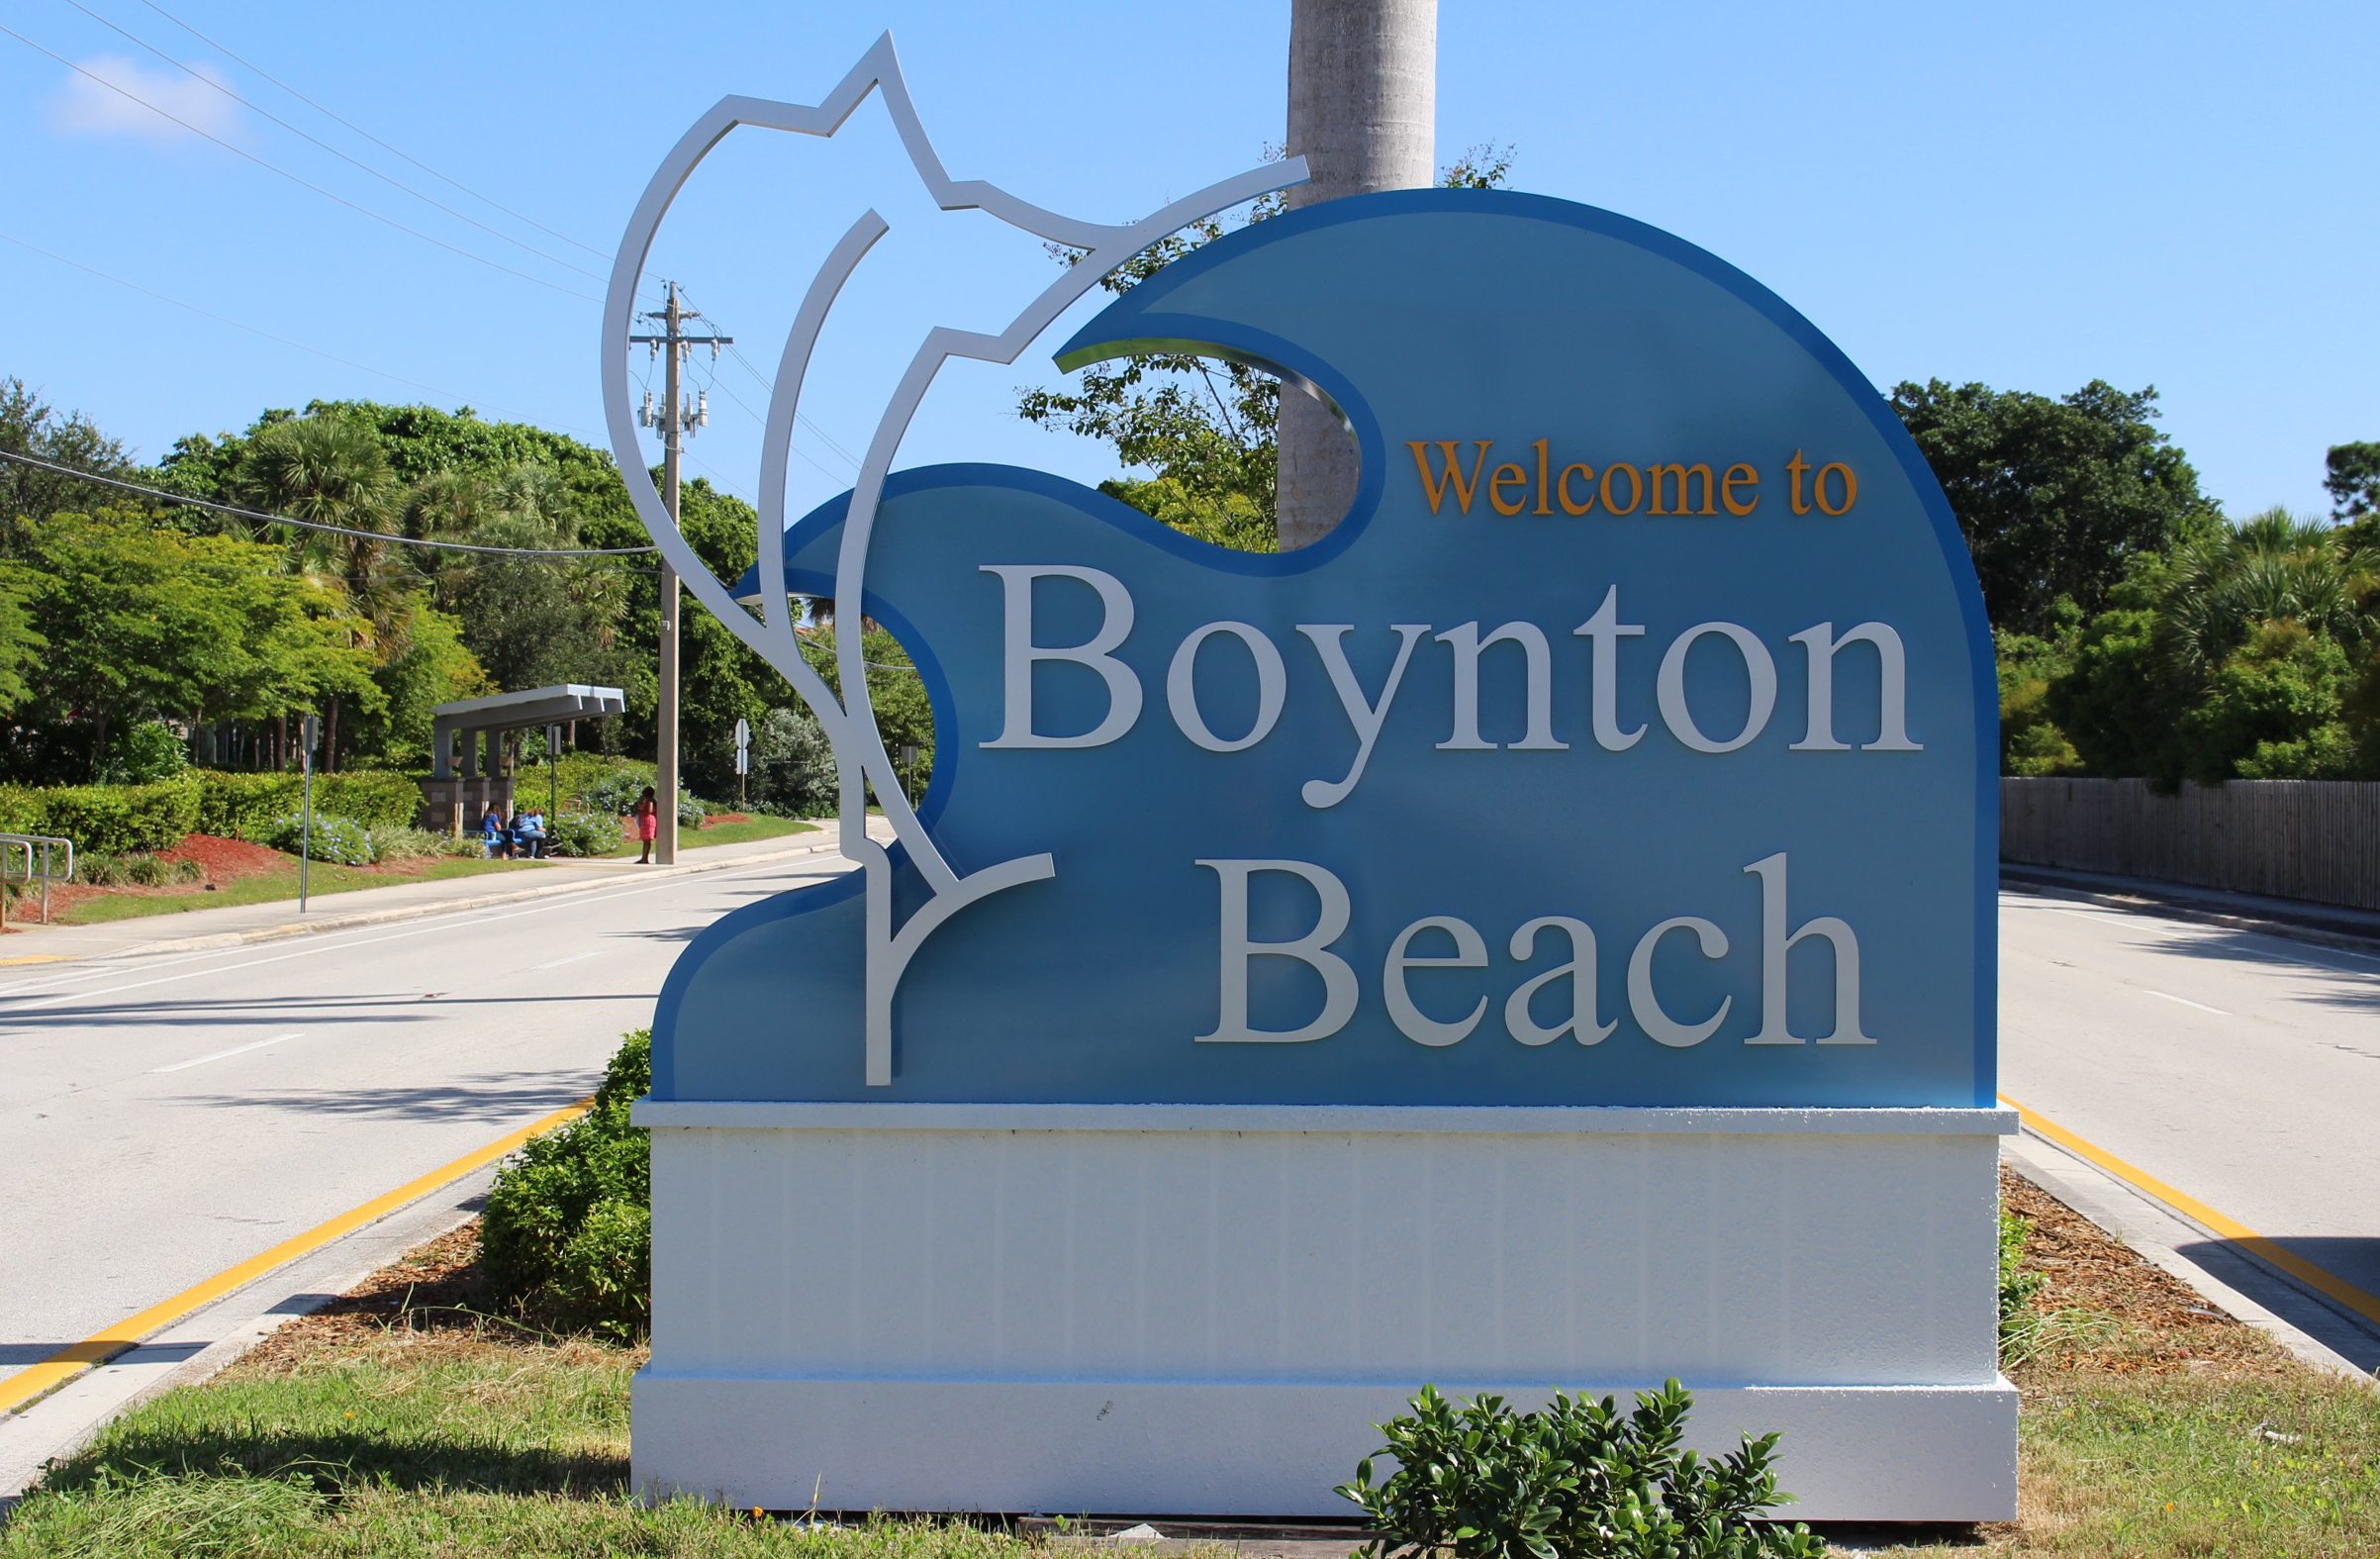 Boynton Beach Real Estate and homes for sale in Boynton Beach.